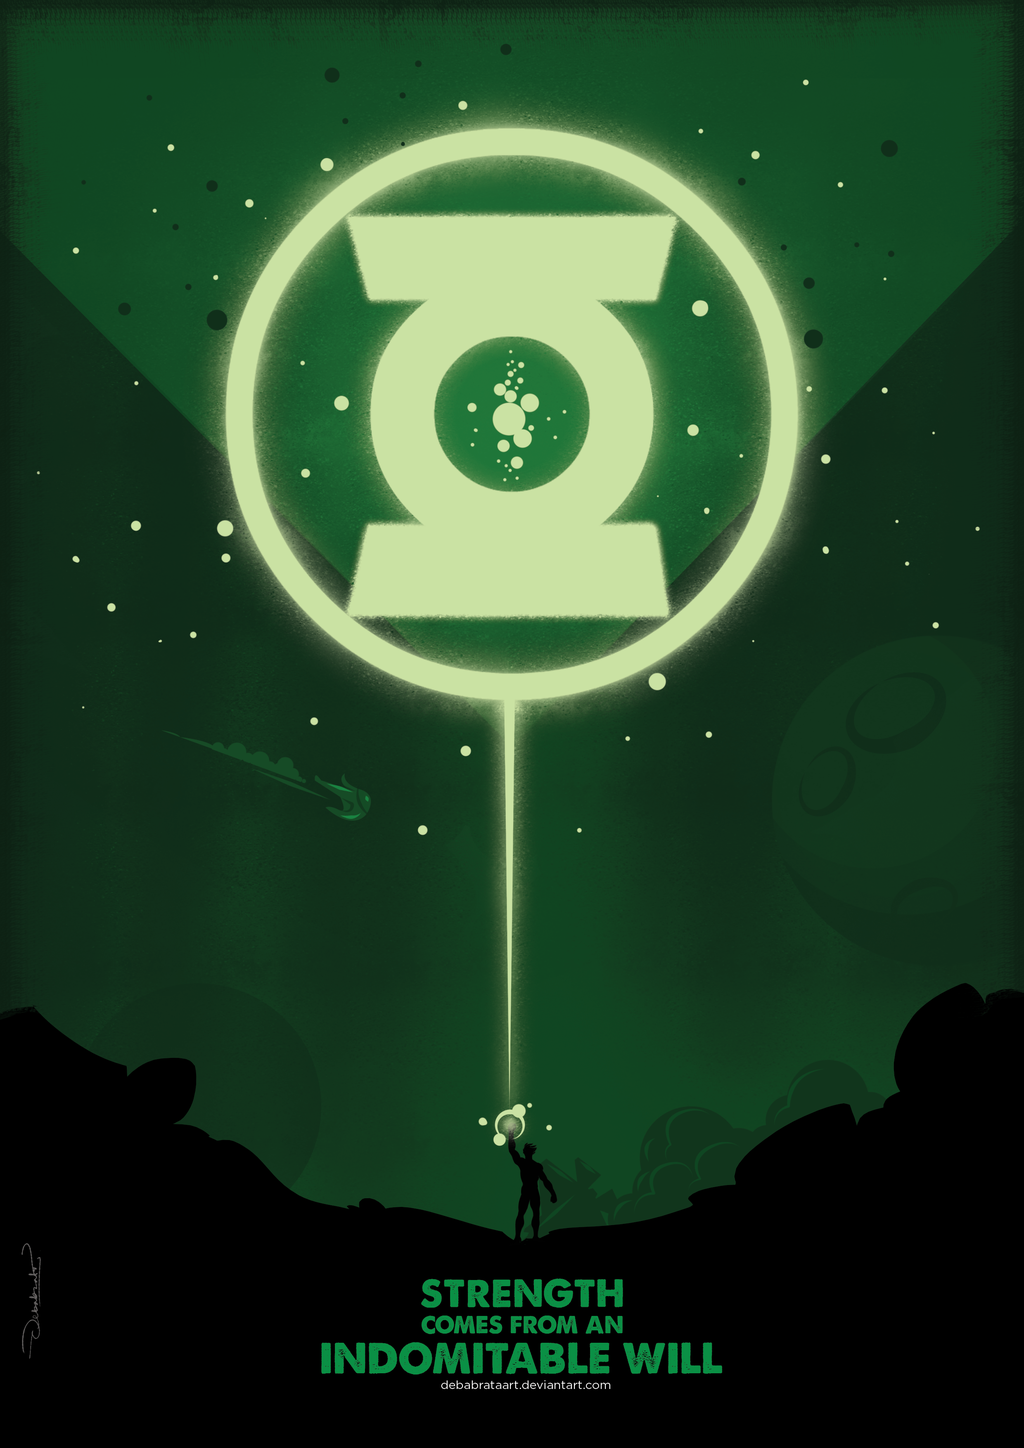 Green Lantern Minimal Poster. Green Lantern Wallpaper, Green Lantern Corps, Green Lantern